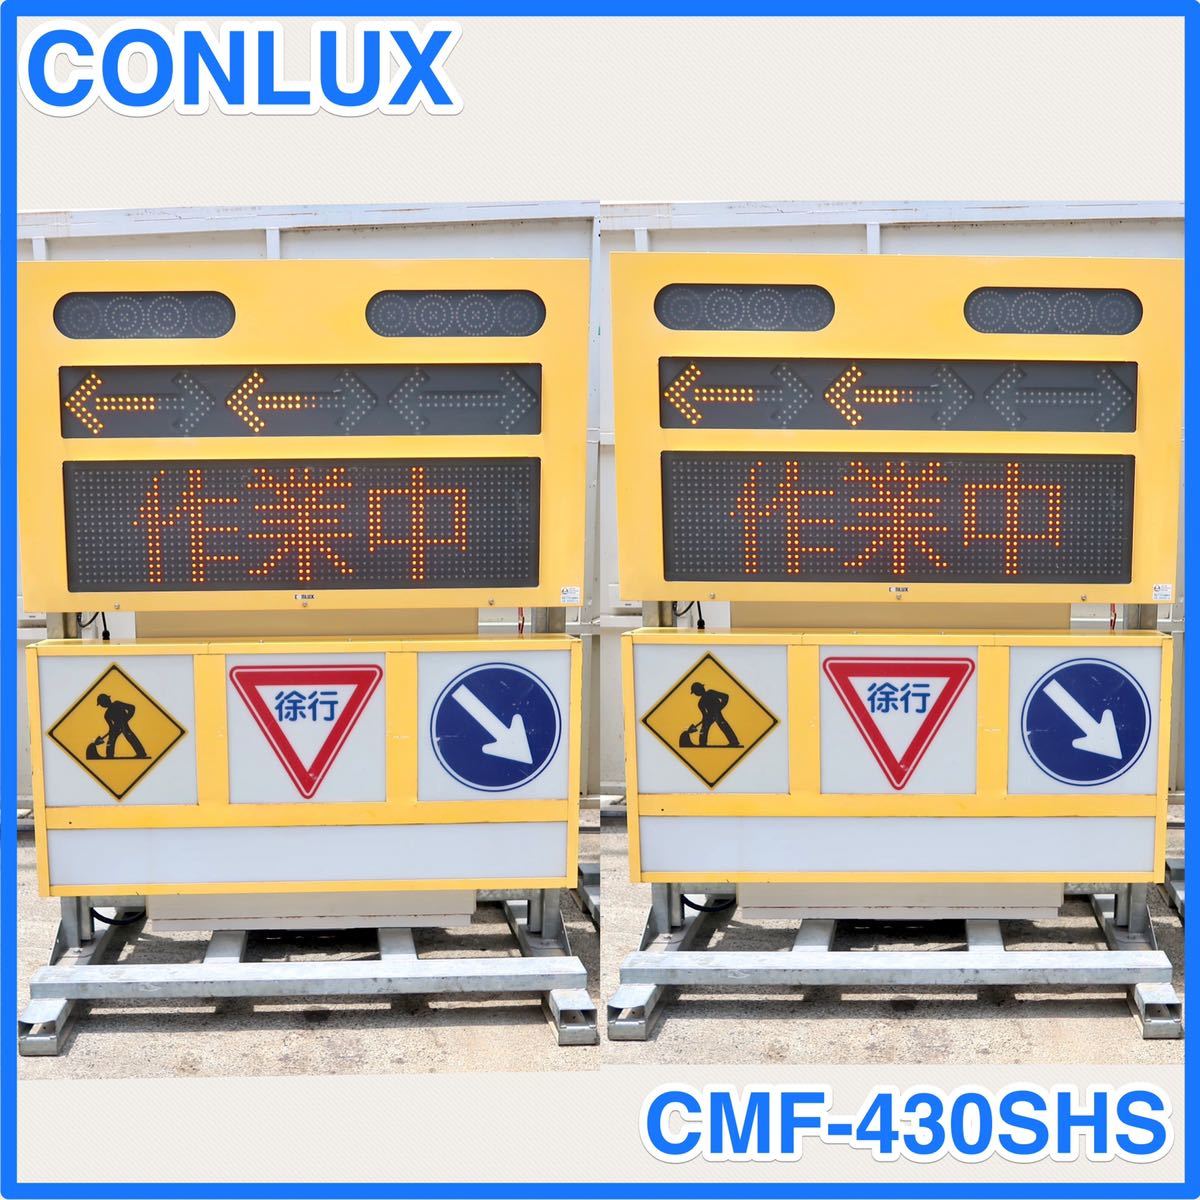 ☆ 中古 2個セット CONLUX コンラックス ソーラー式 LED標示機 メッセージボード CMF-430SHS ☆